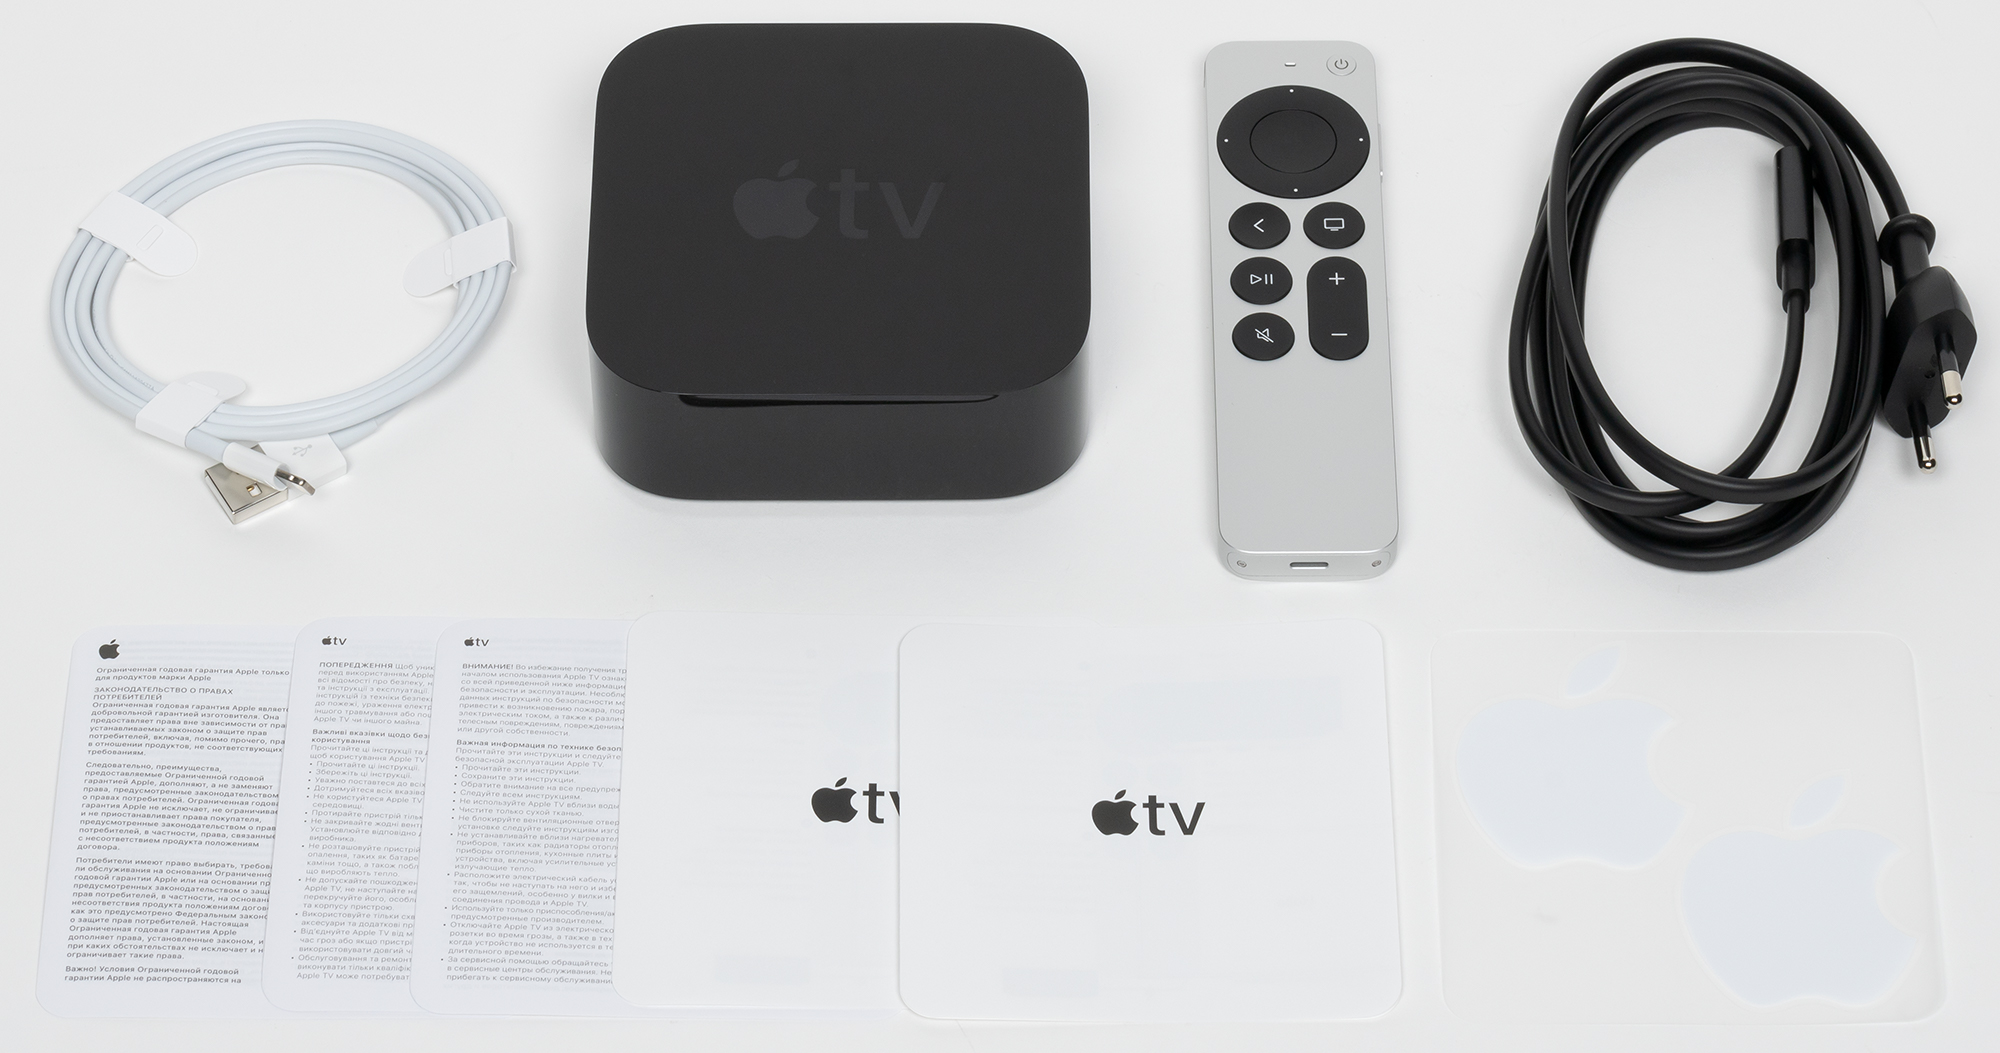 Обзор телеприставки Apple TV 4K (2021) с поддержкой HDR-контента 4К